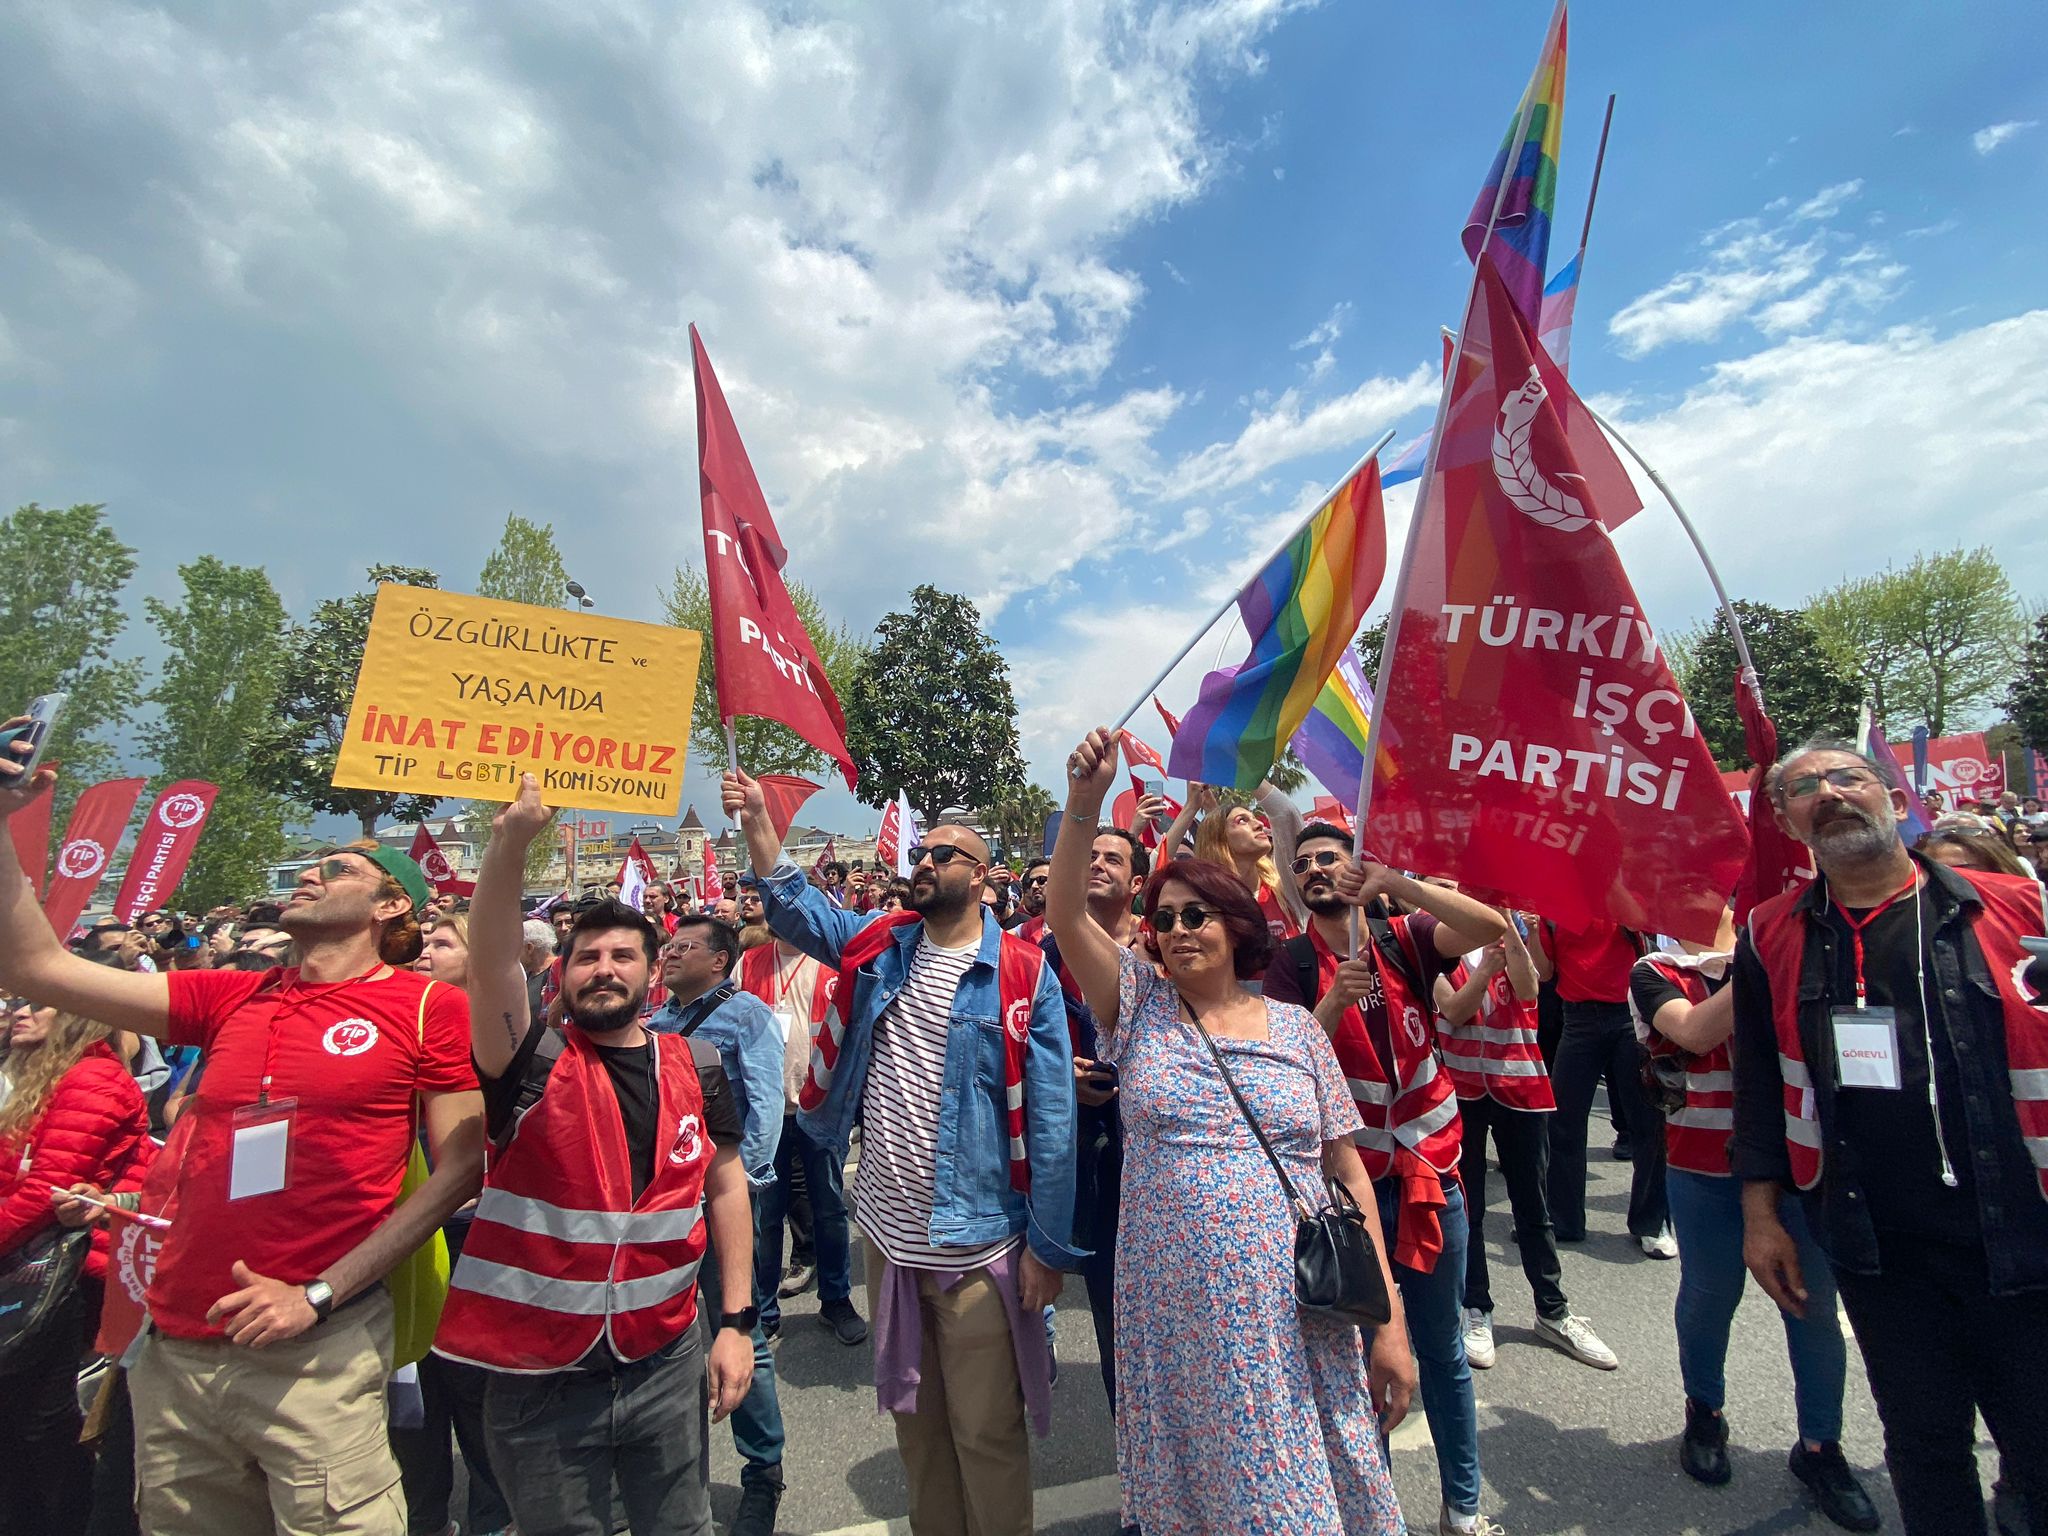 TİP, RTÜK’ün LGBTİ+ karşıtı kamu spotuna karşı harekete geçti | Kaos GL - LGBTİ+ Haber Portalı Haber